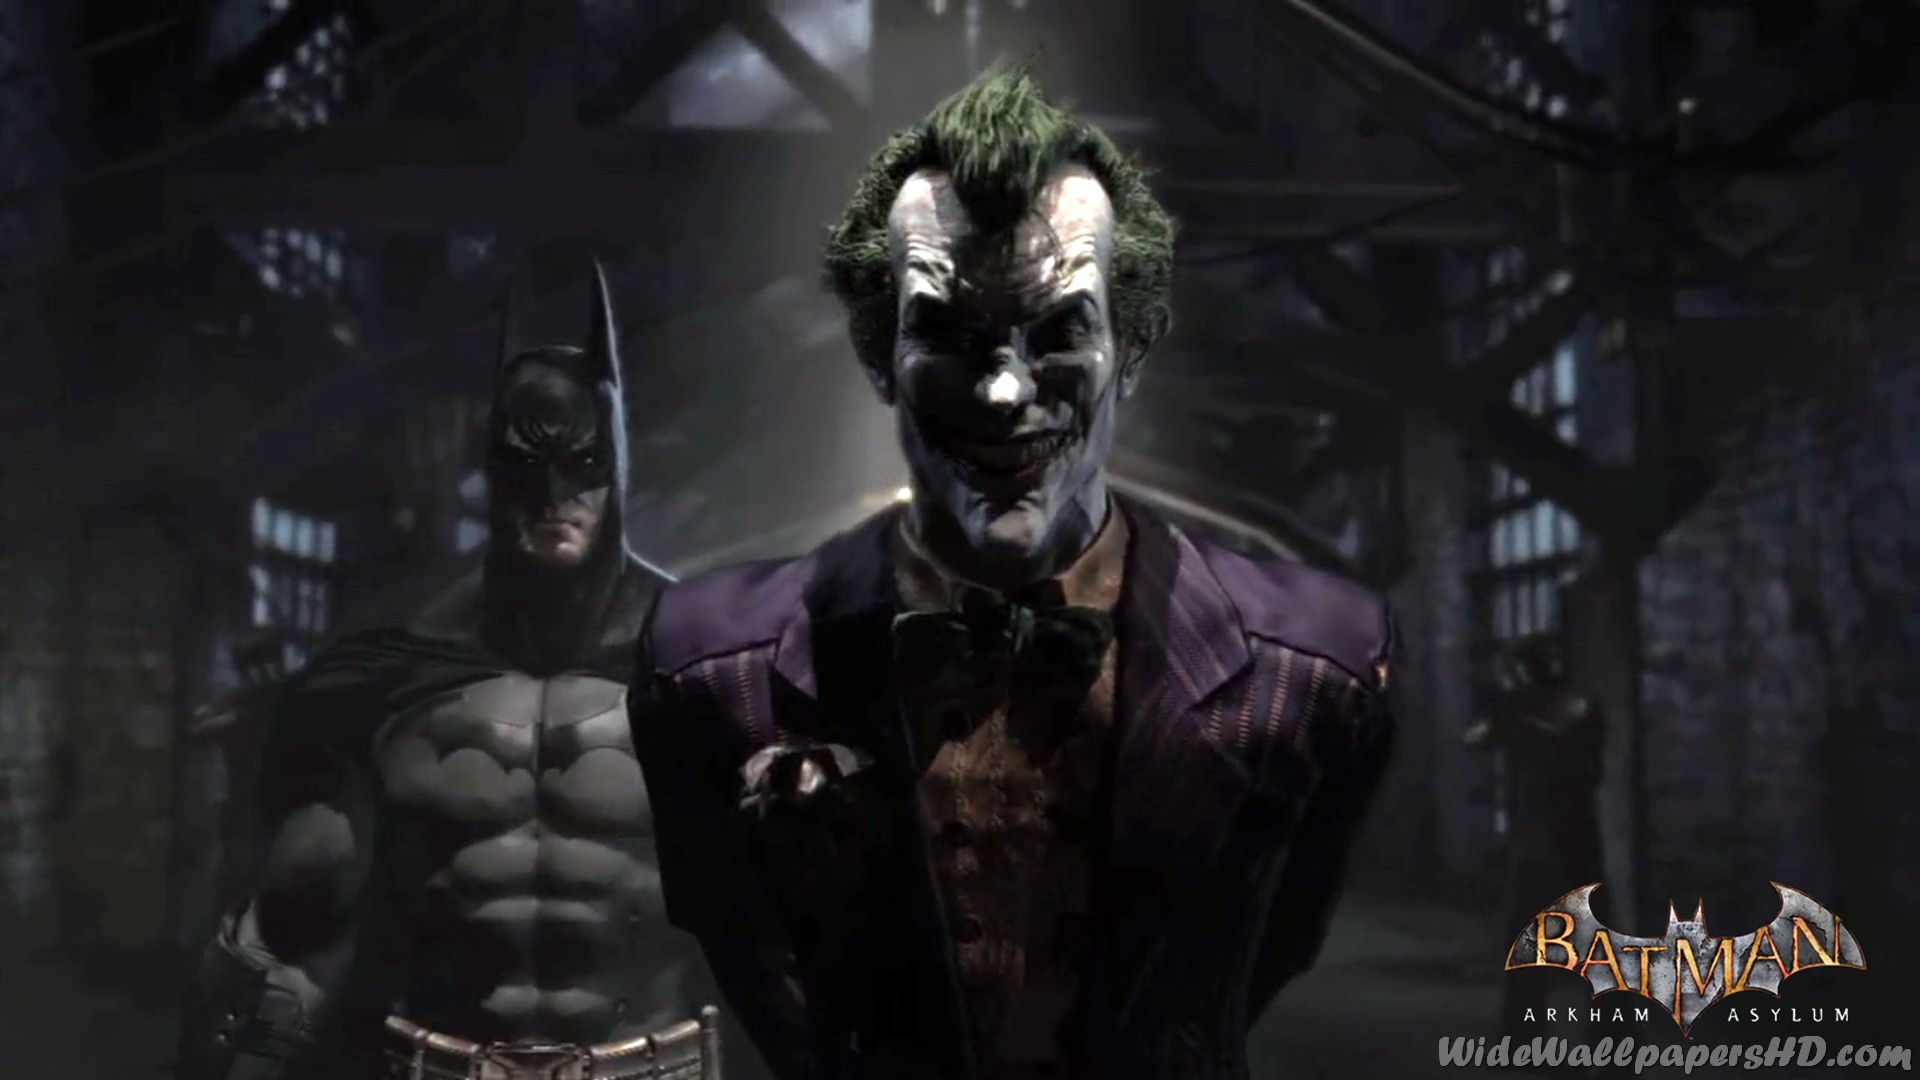 Image Batman With Joker In Pen Batman Arkham Asylum Wallpapers Jpg Villains Wiki Fandom Powered By Wikia 1920x1080